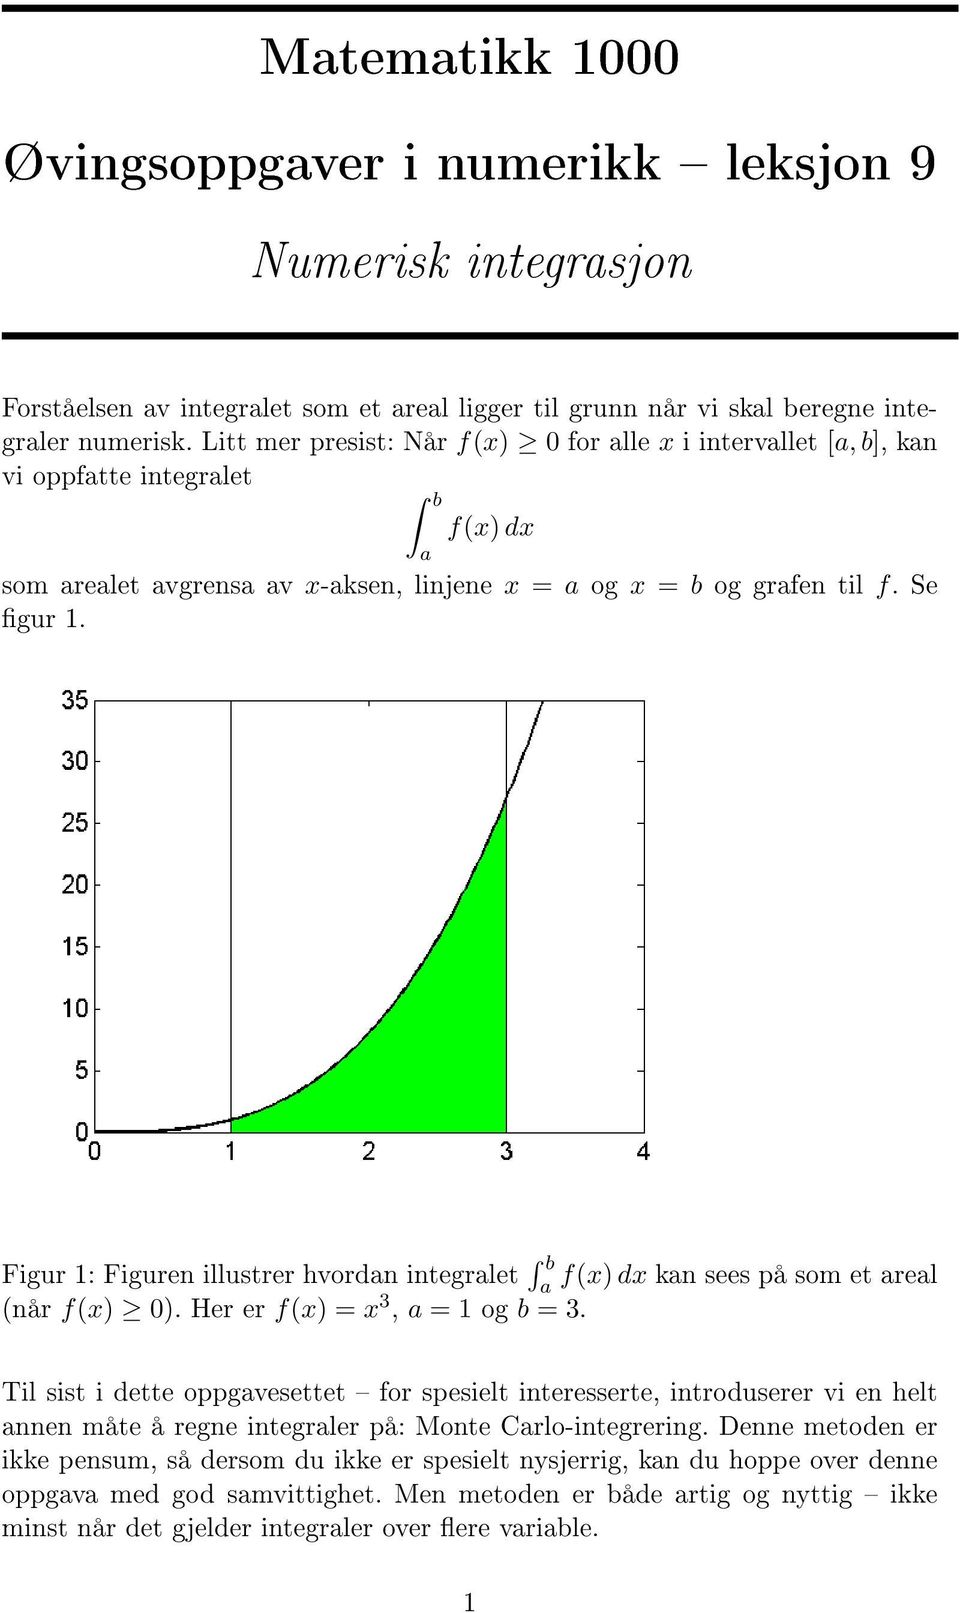 Figur 1: Figuren illustrer hvordn integrlet b f(x) dx kn sees på som et rel (når f(x) 0). Her er f(x) = x 3, = 1 og b = 3.